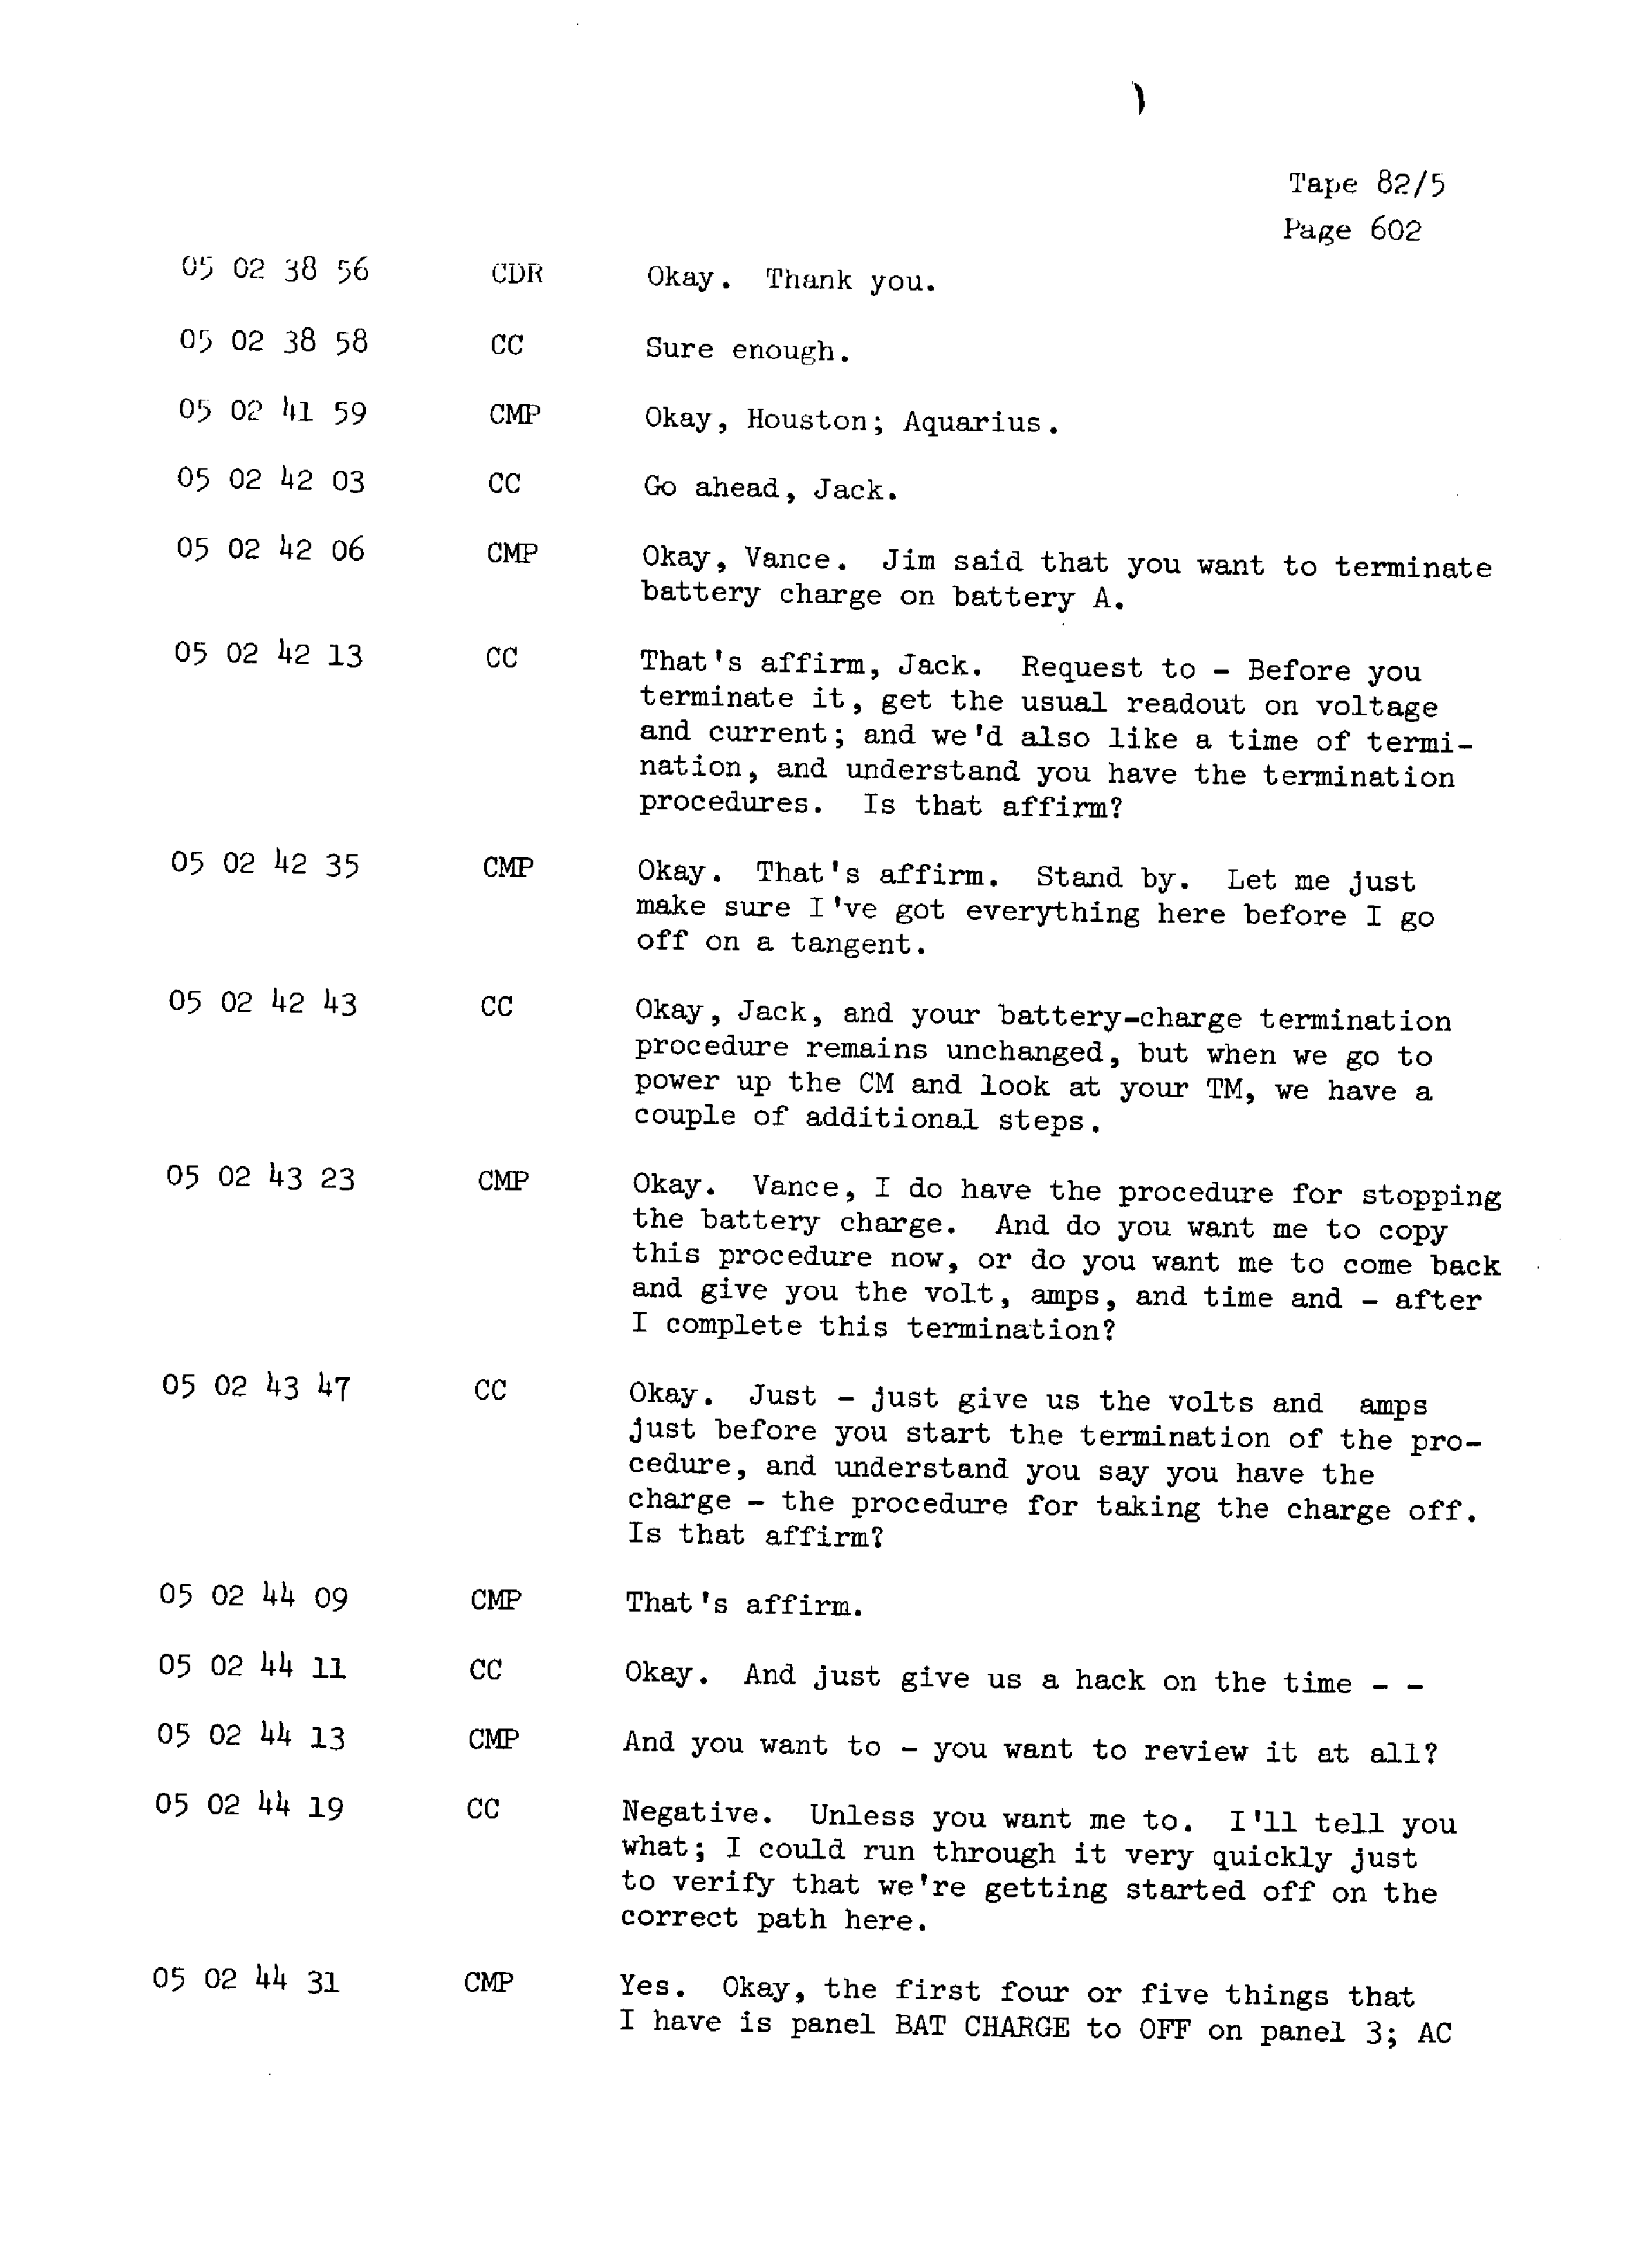 Page 609 of Apollo 13’s original transcript